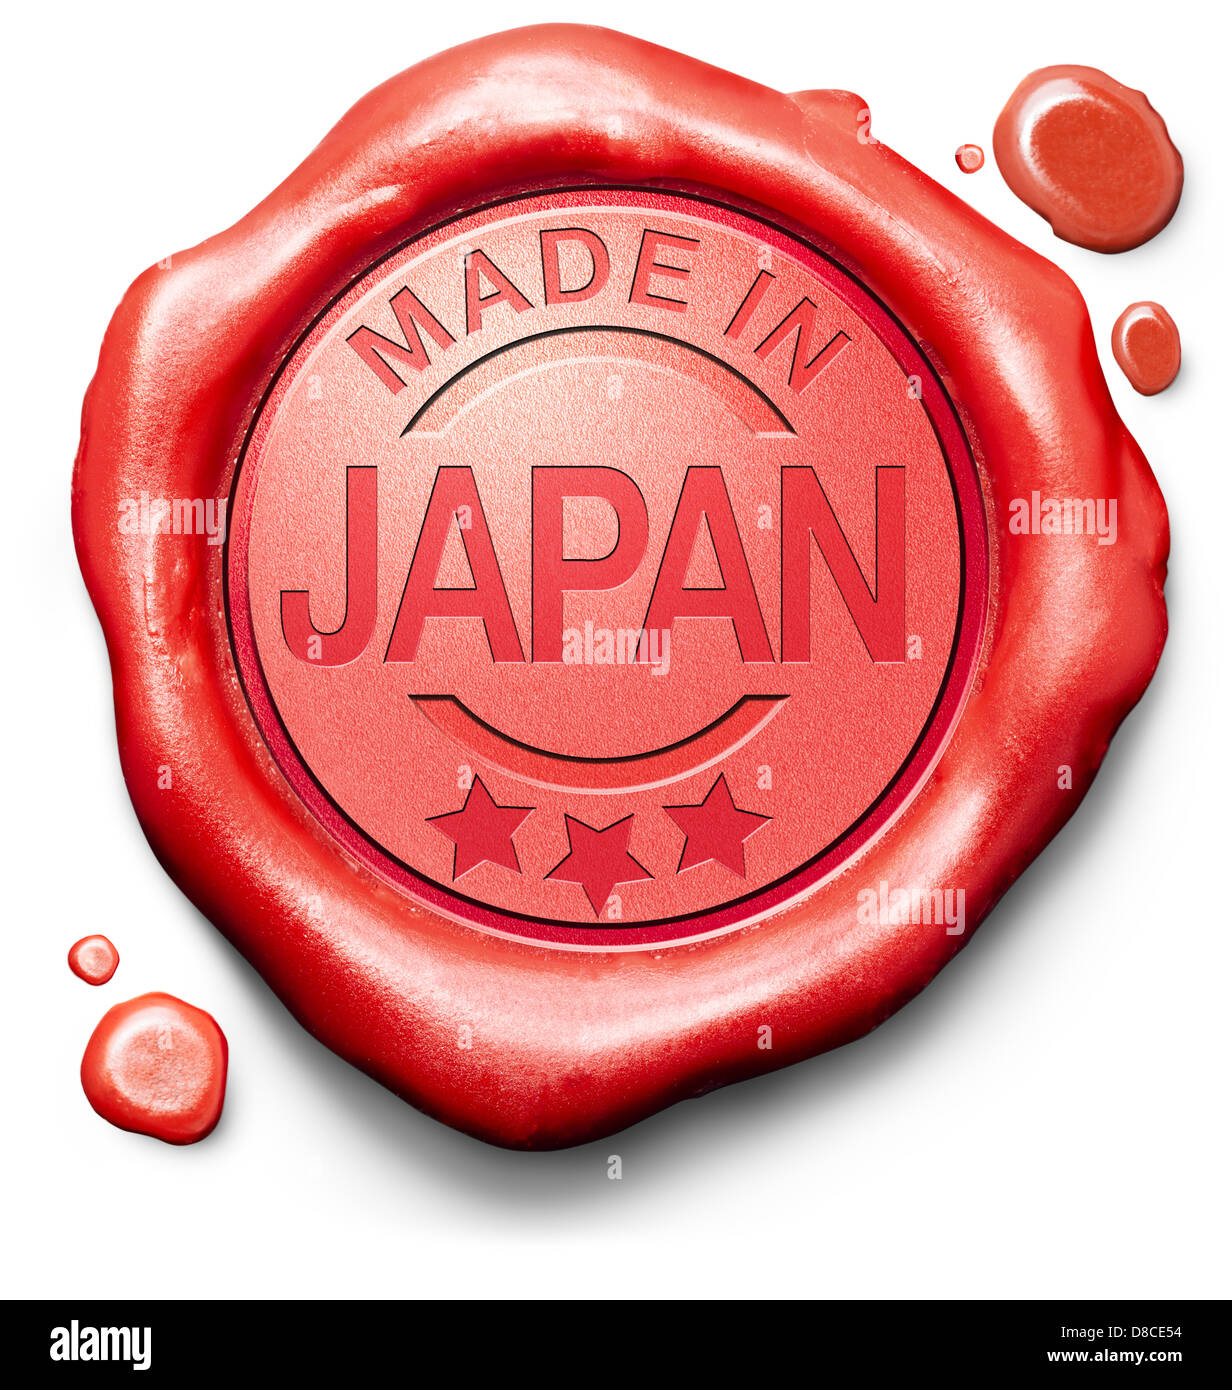 hergestellt in Japan Originalprodukt kaufen lokale kaufen authentische japanische Qualität Label rote Wachssiegel Stempel Stockfoto